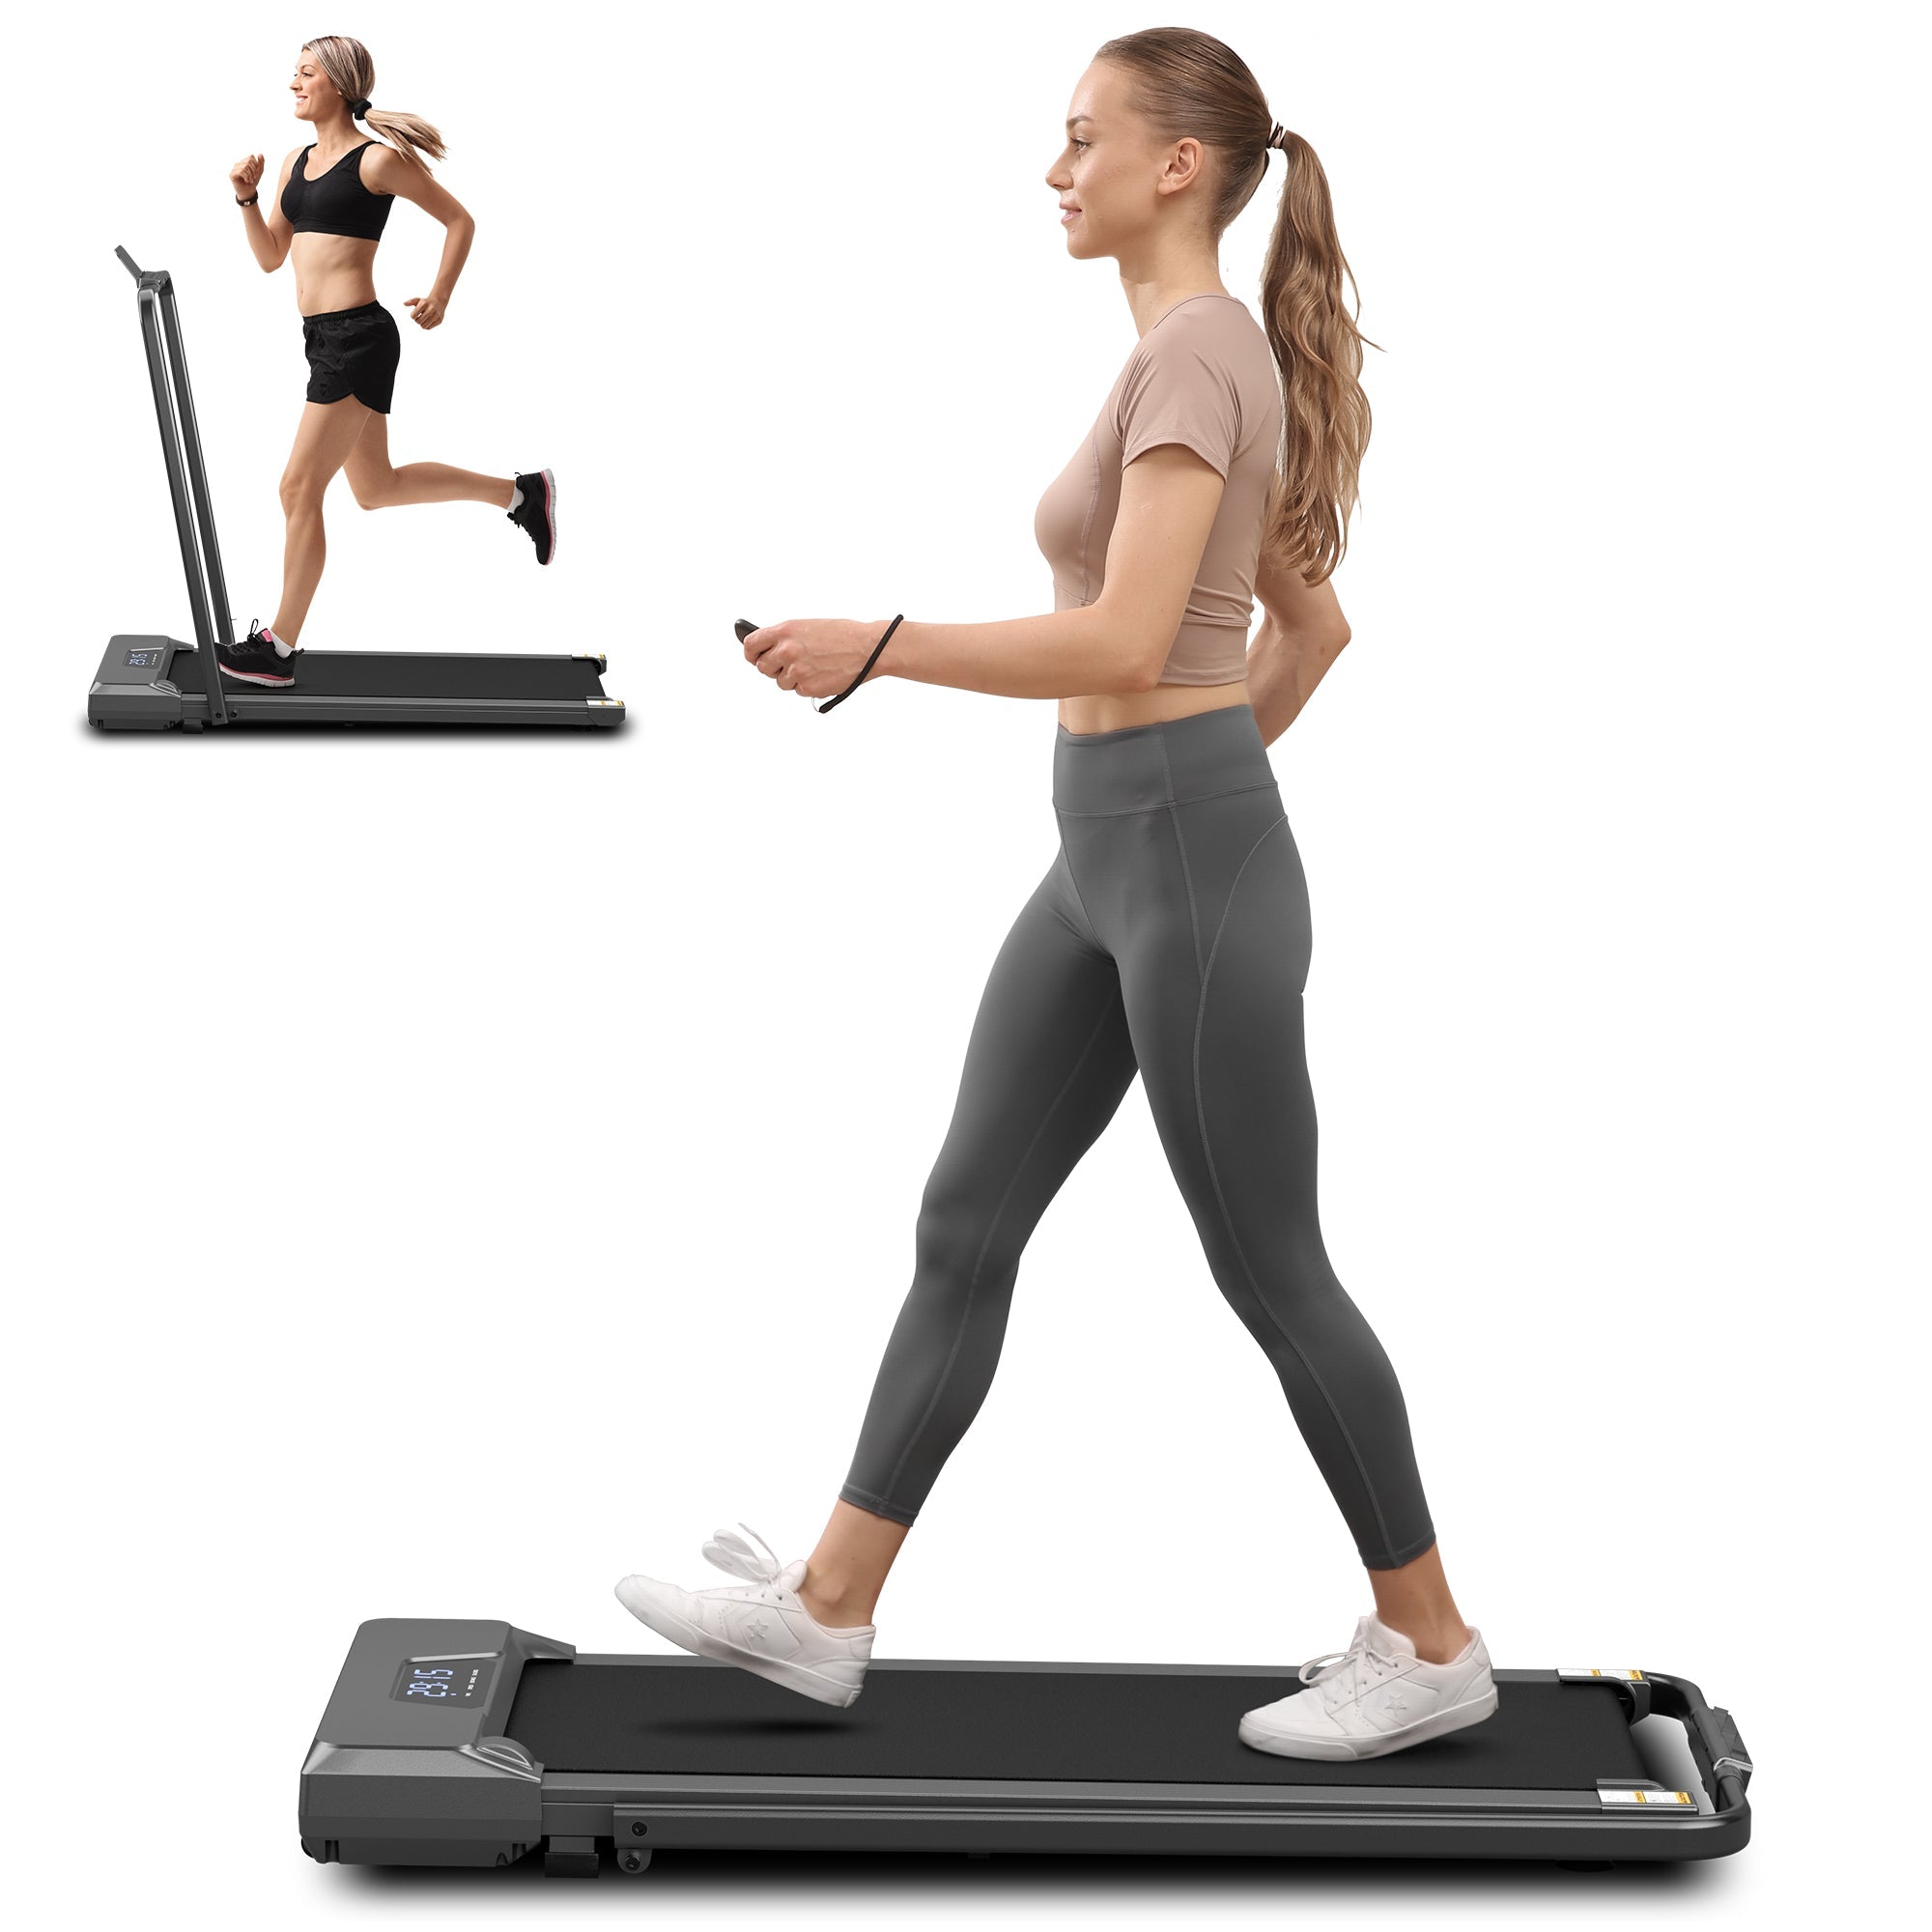 2-in-1 treadmill